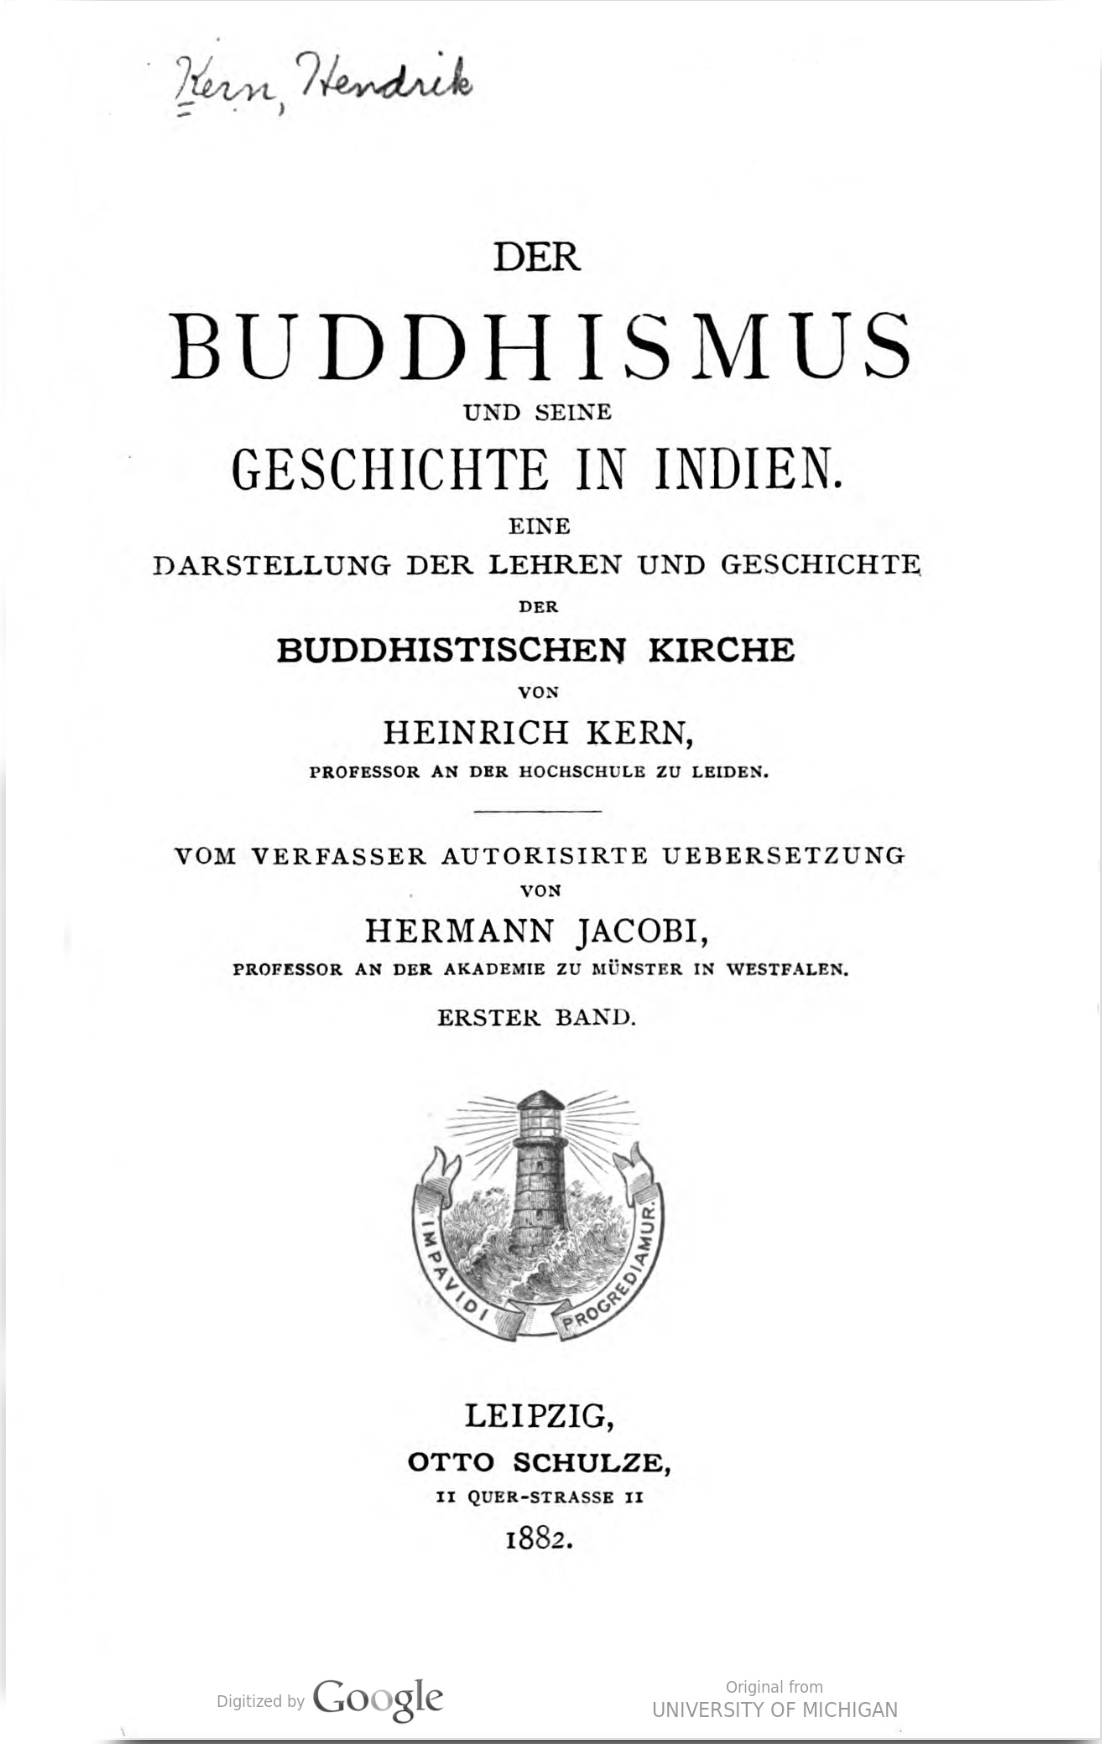 Der Buddhismus und seine Geschichte in Indien Vol 1-front.jpg